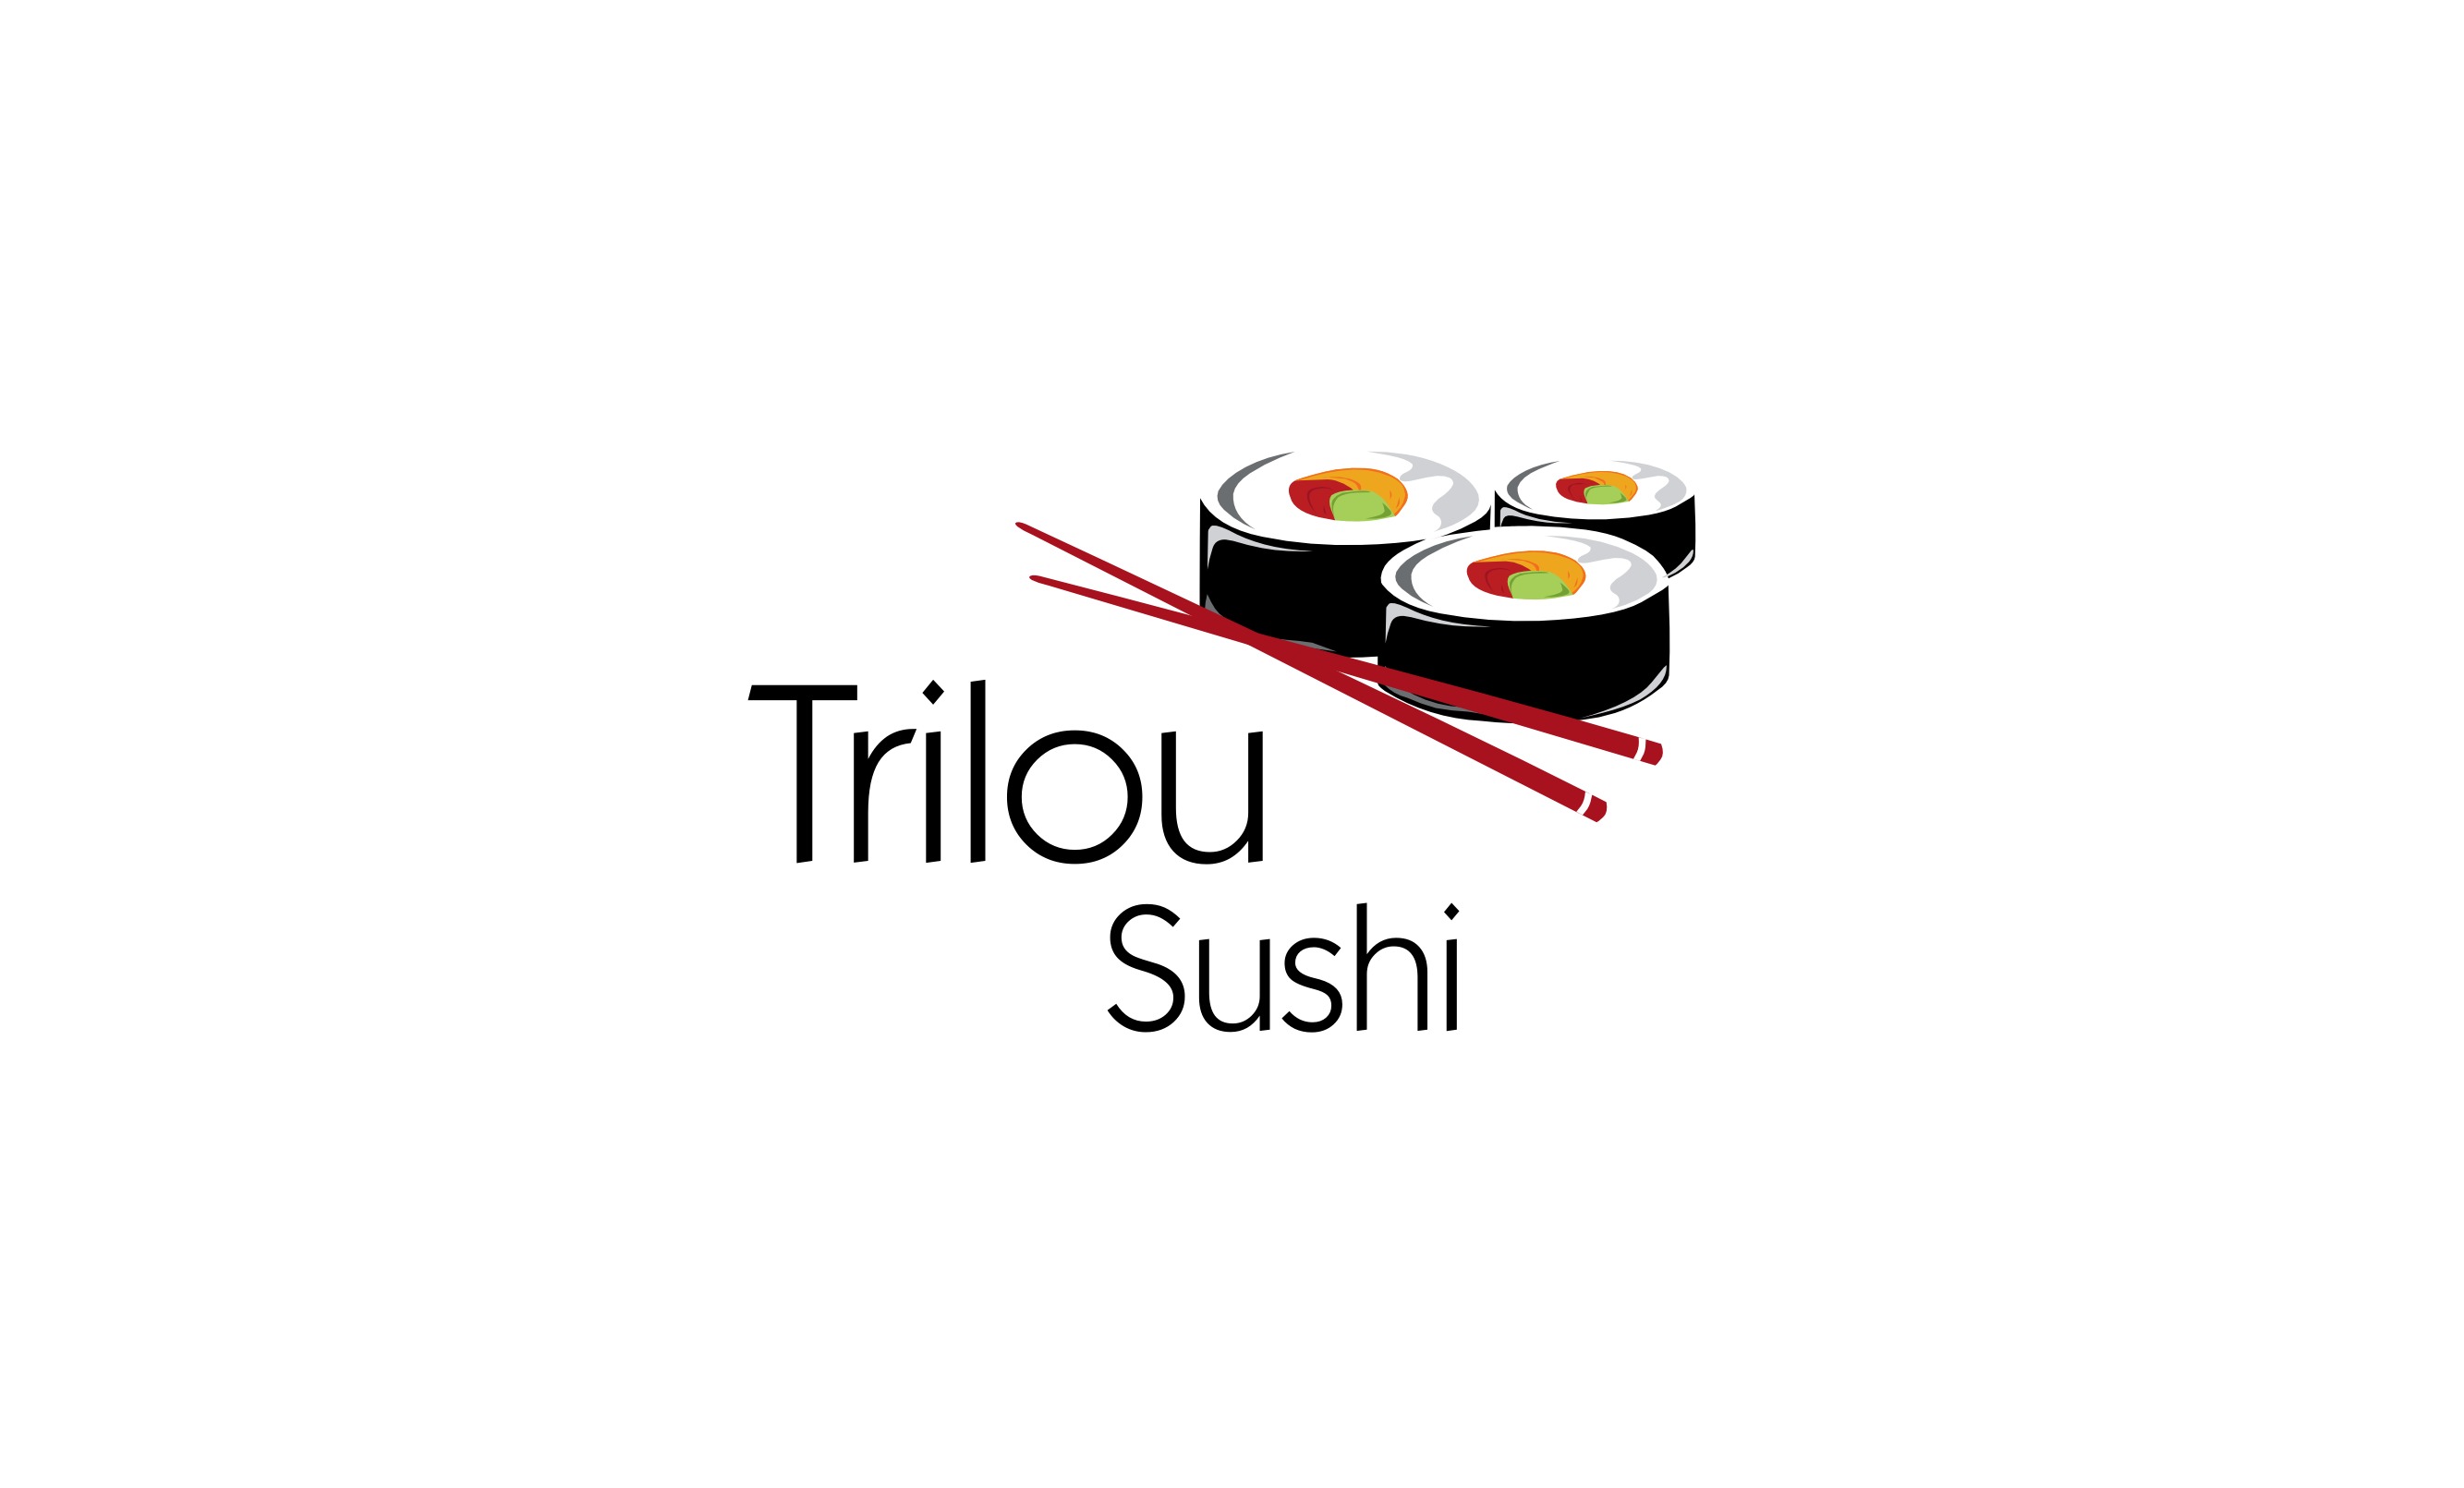 Trilou Sushi